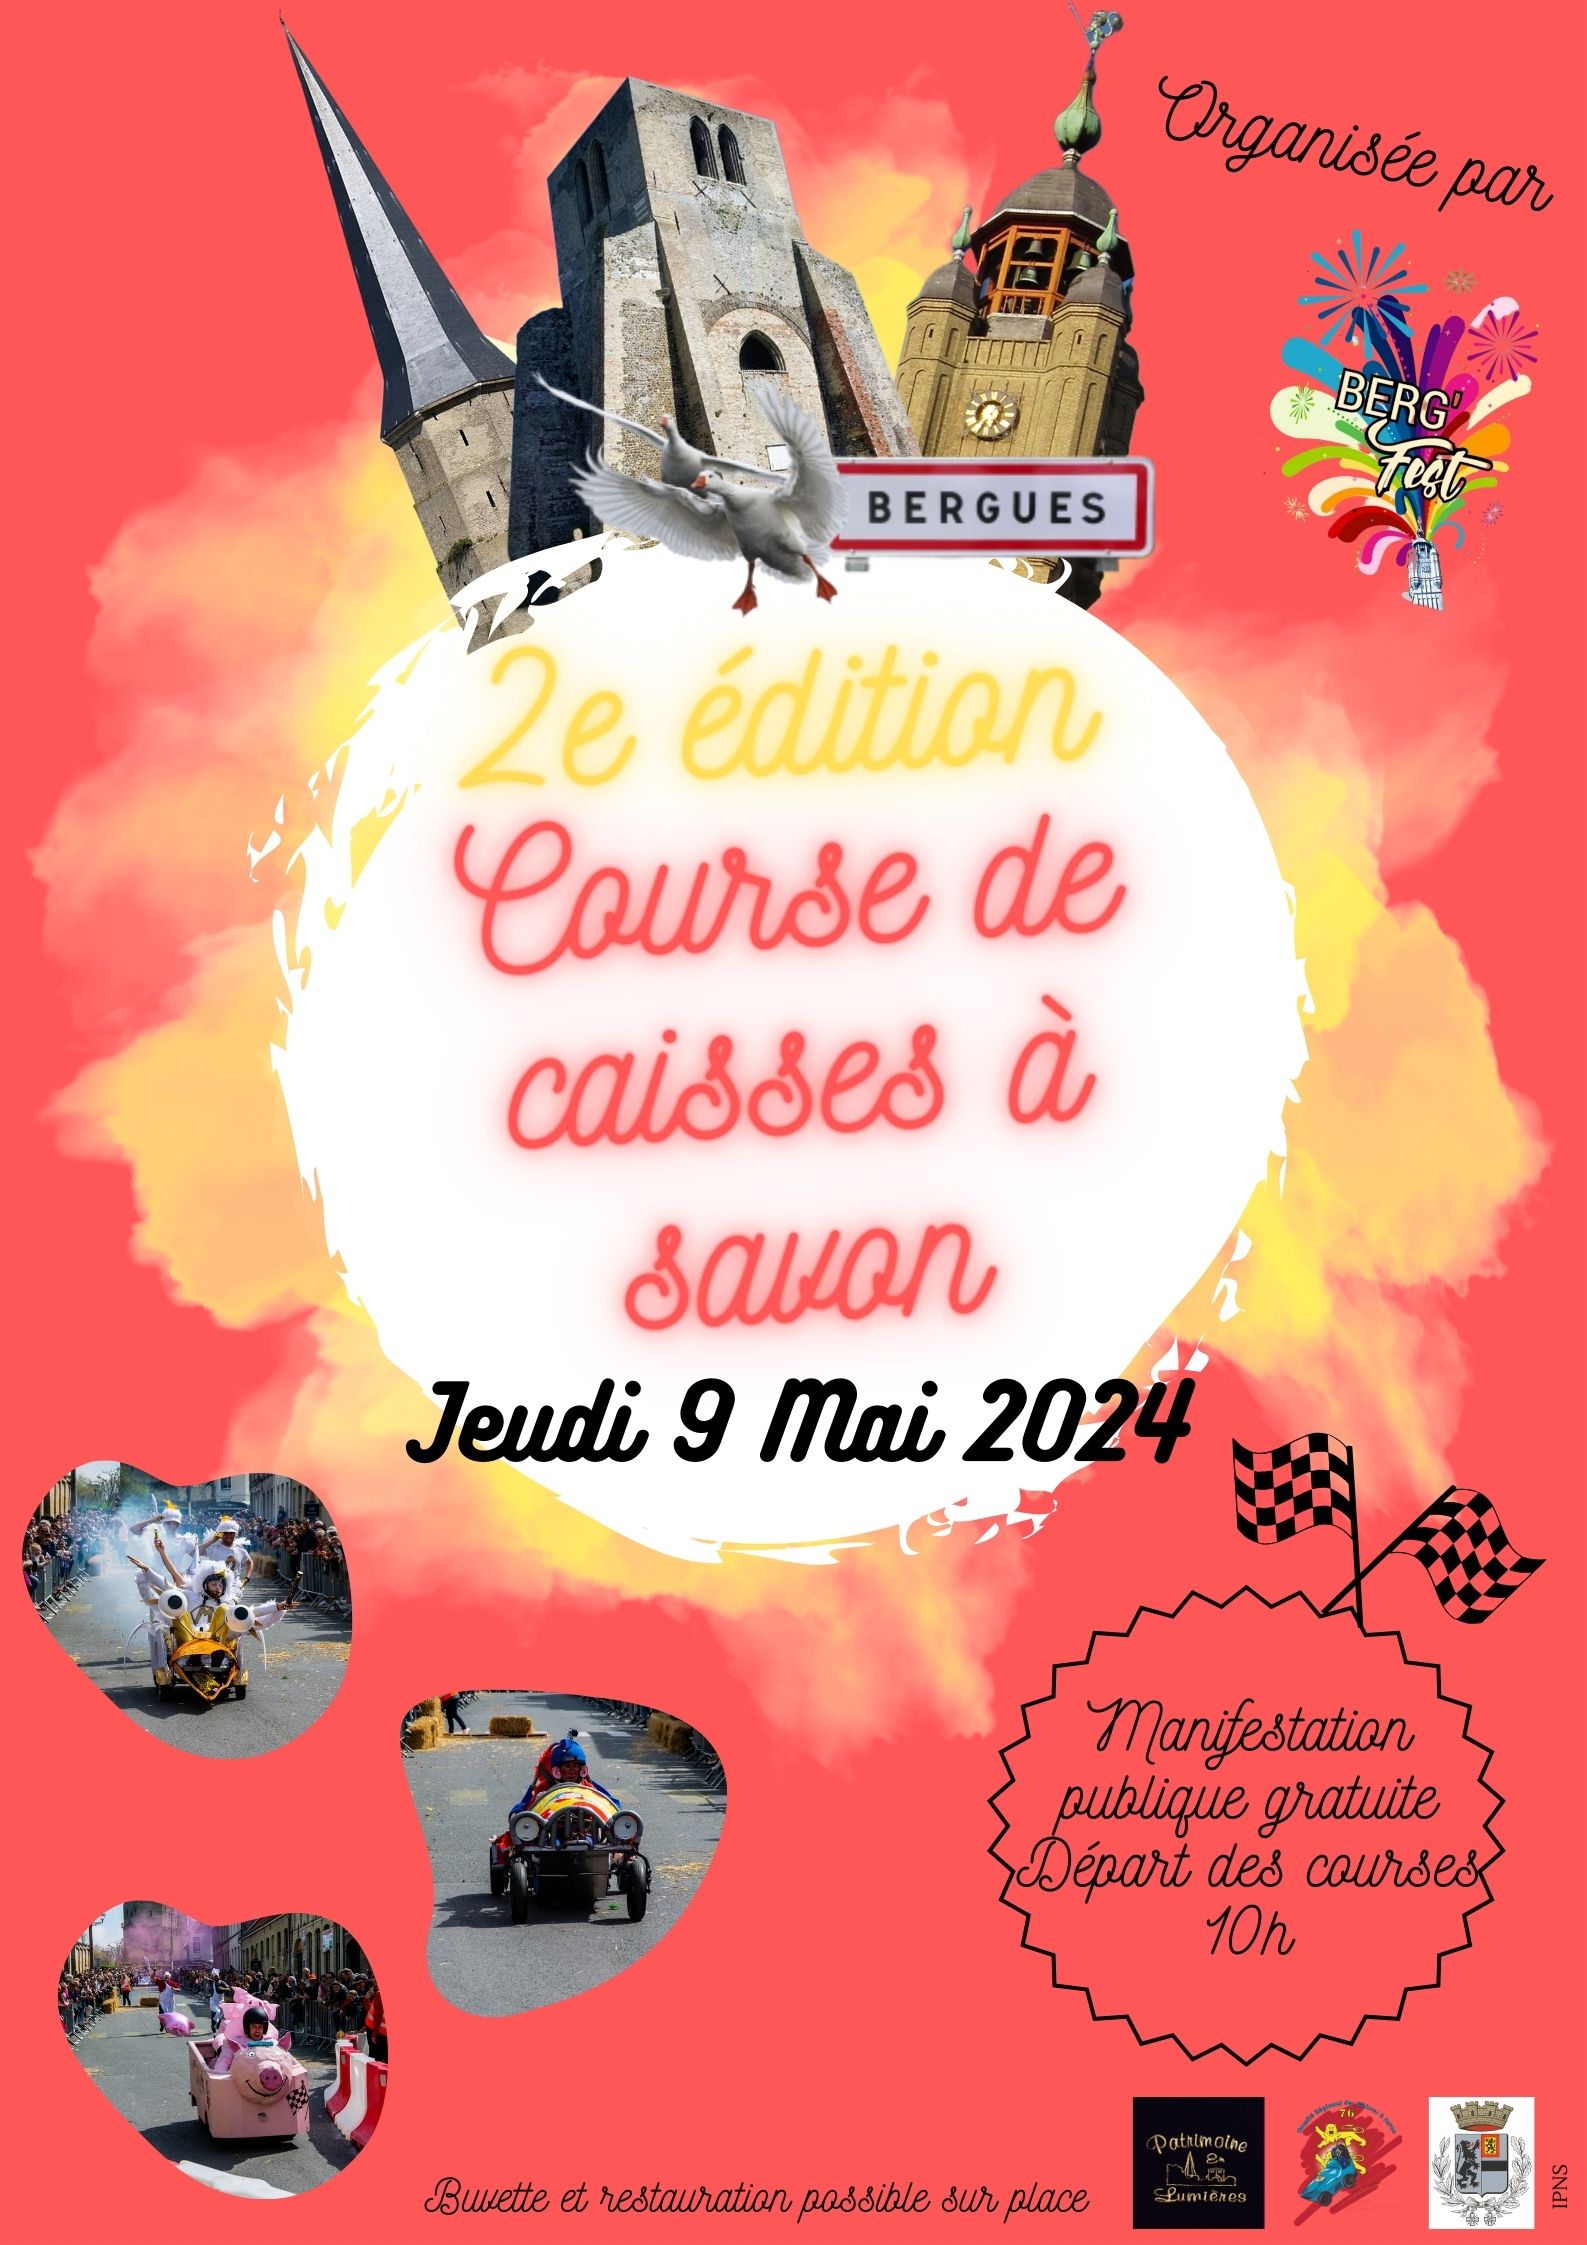 Bergues - Course Caisses à savon 9 mai 2024.jpg